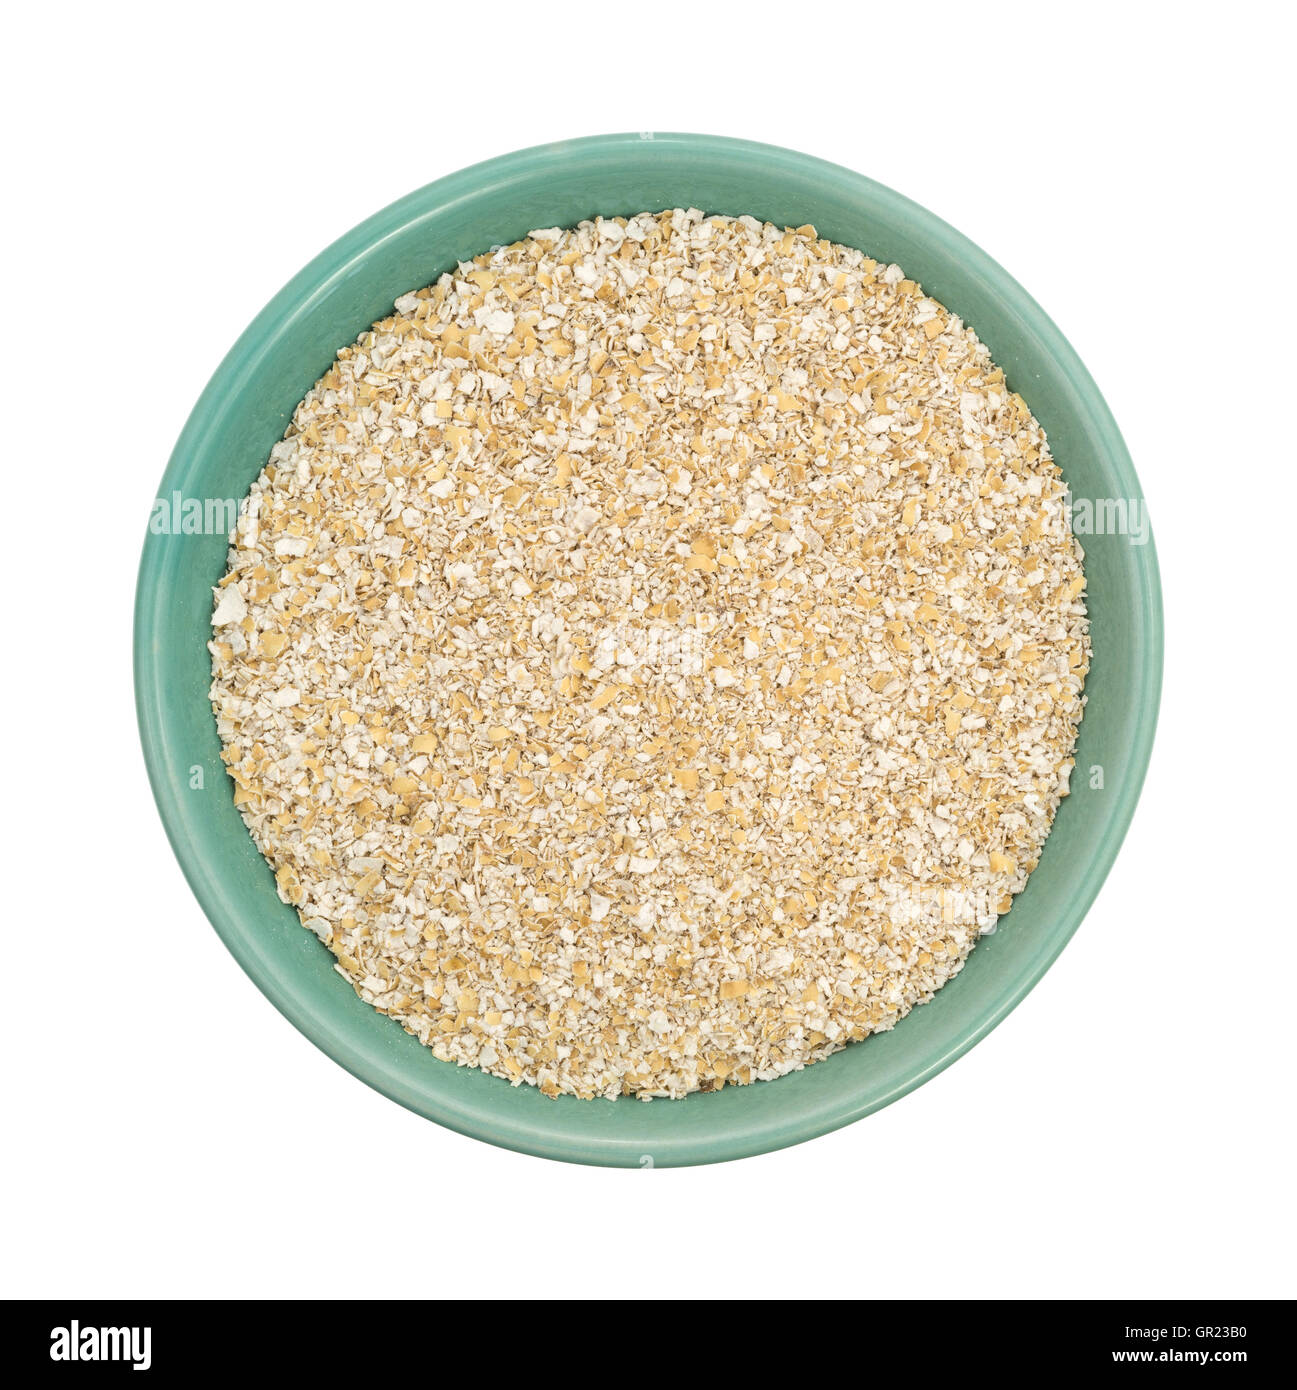 Vista in pianta secca di crusca di avena cereale a caldo in un recipiente verde isolato su uno sfondo bianco. Foto Stock